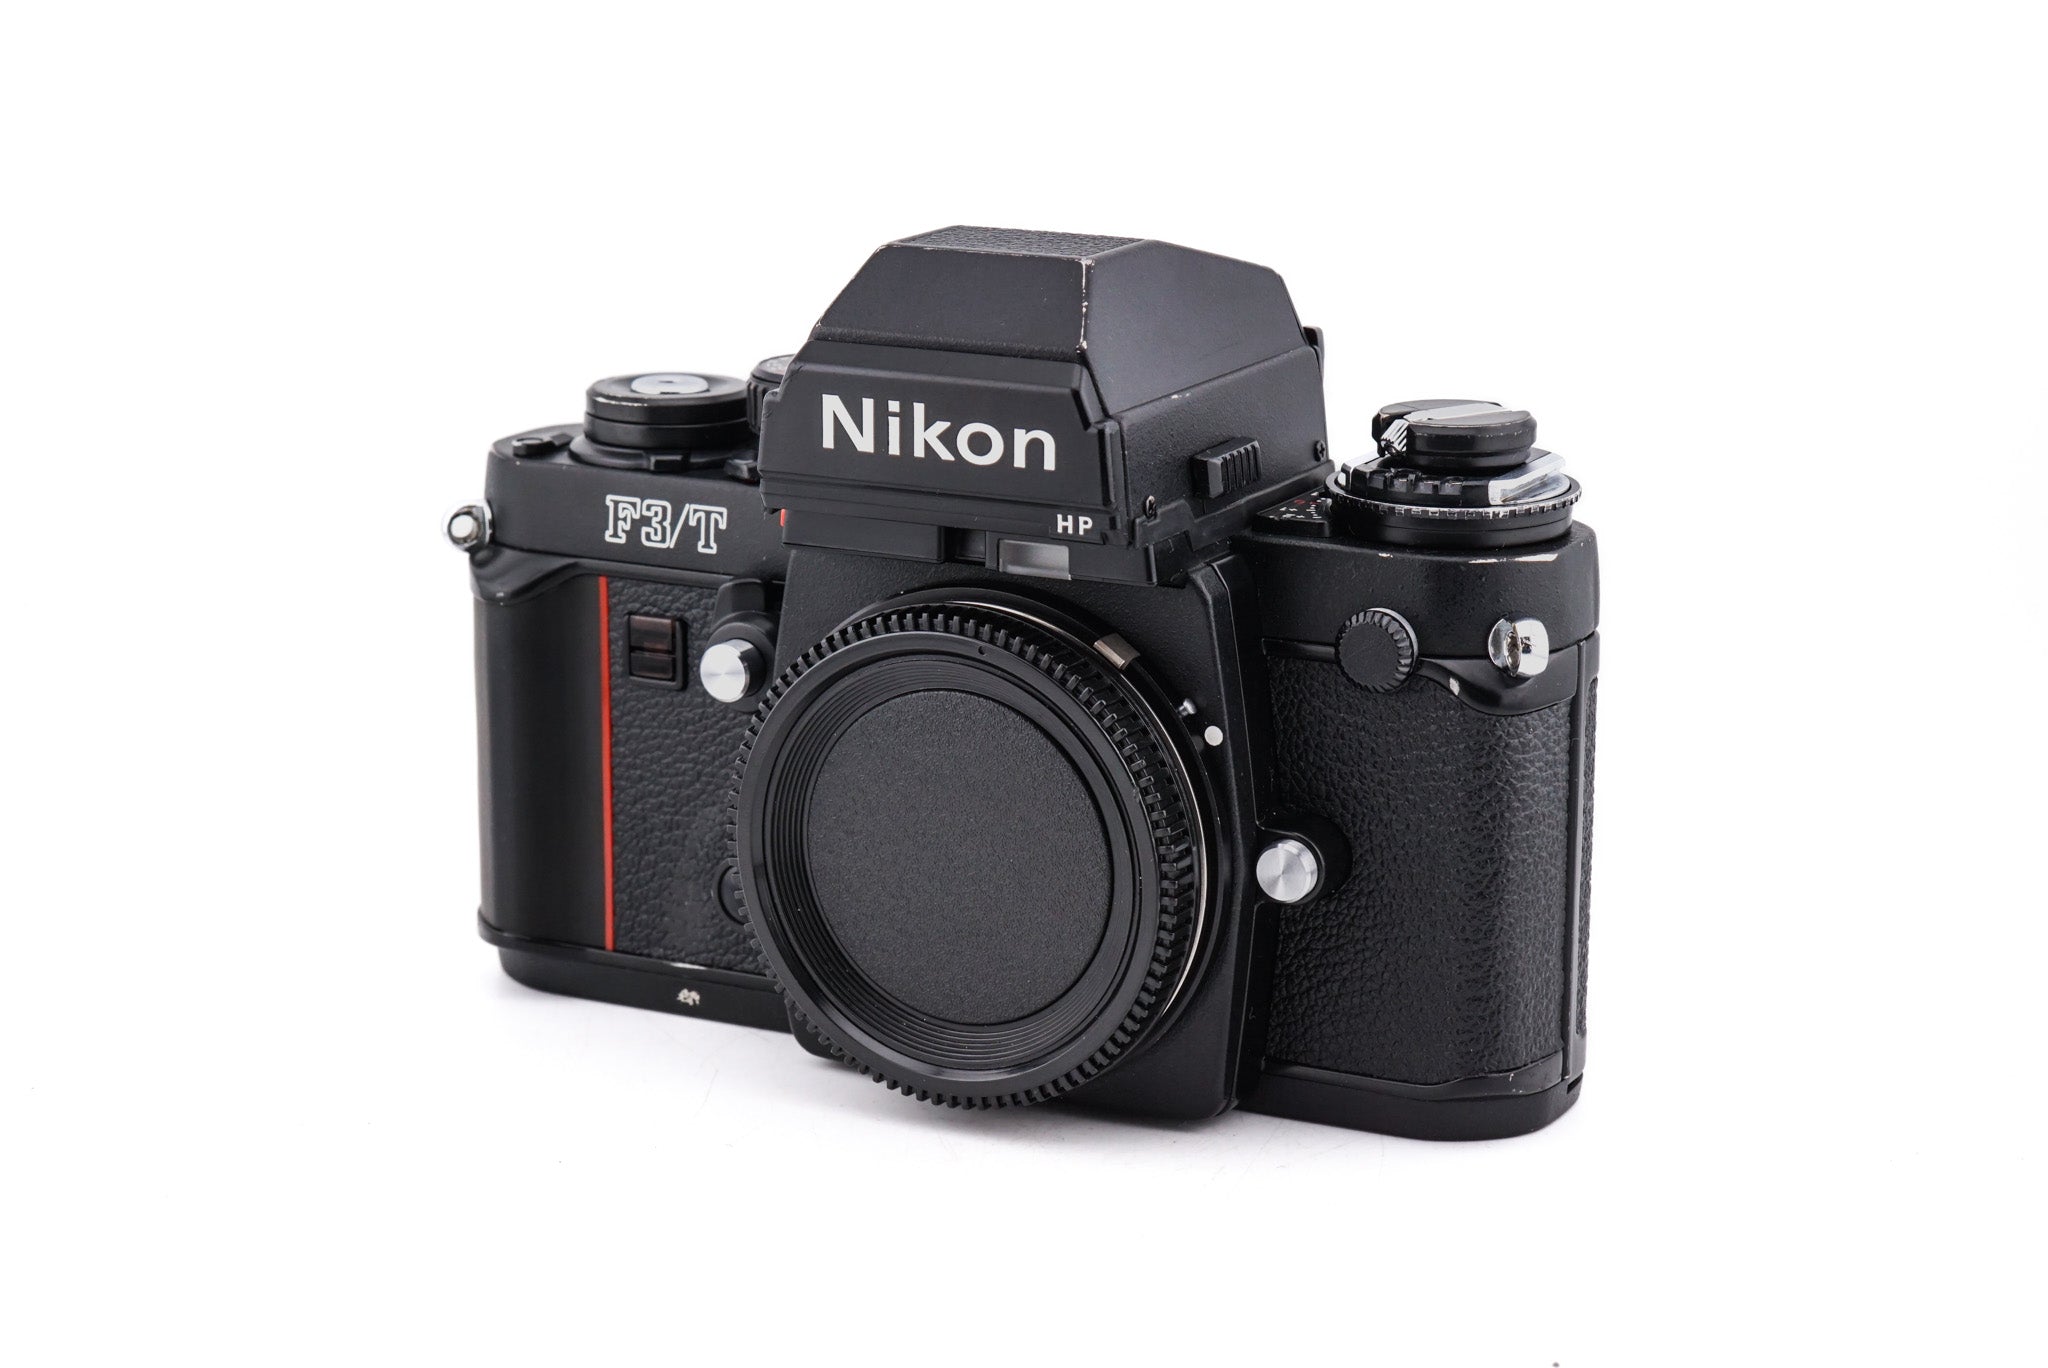 Nikon F3/T - Camera